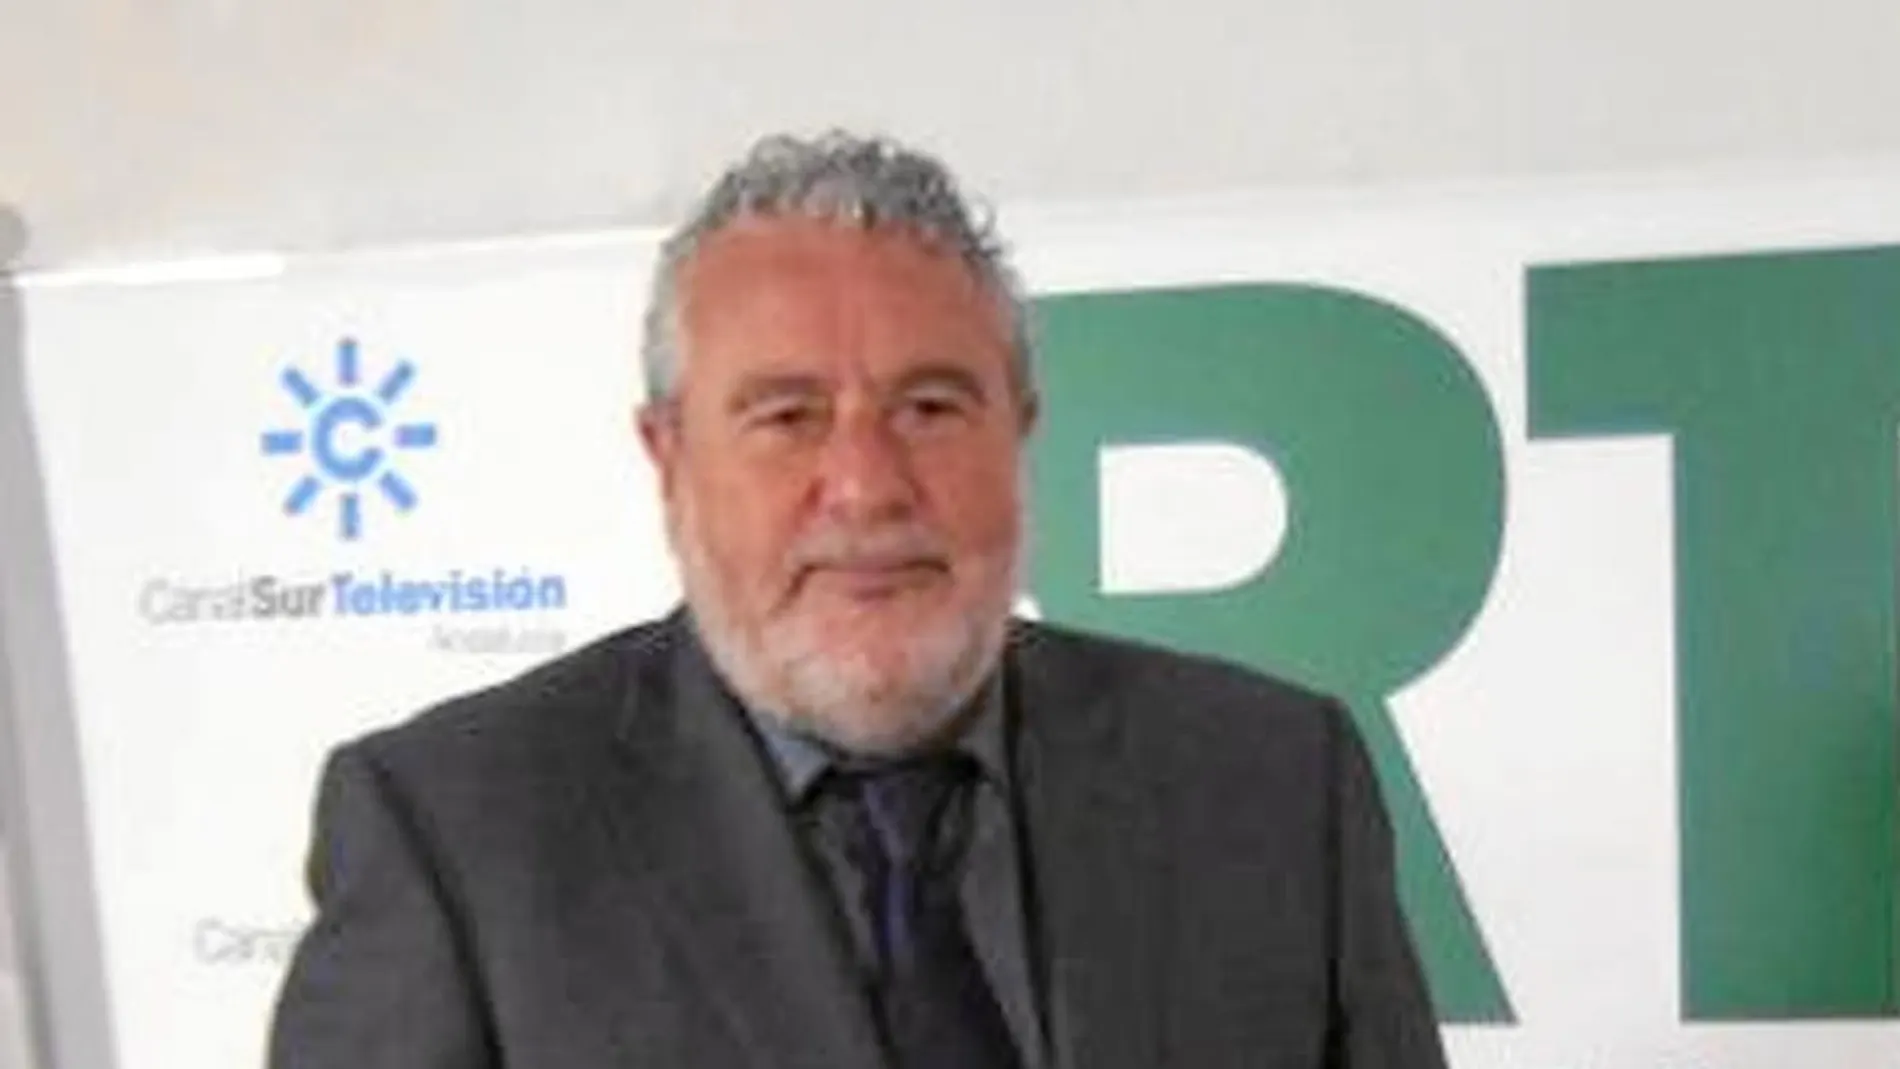 El subdirector de la RTVA, Joaquín Durán, dio ayer su primera rueda de prensa tras asumir sus nuevas competencias en la empresa